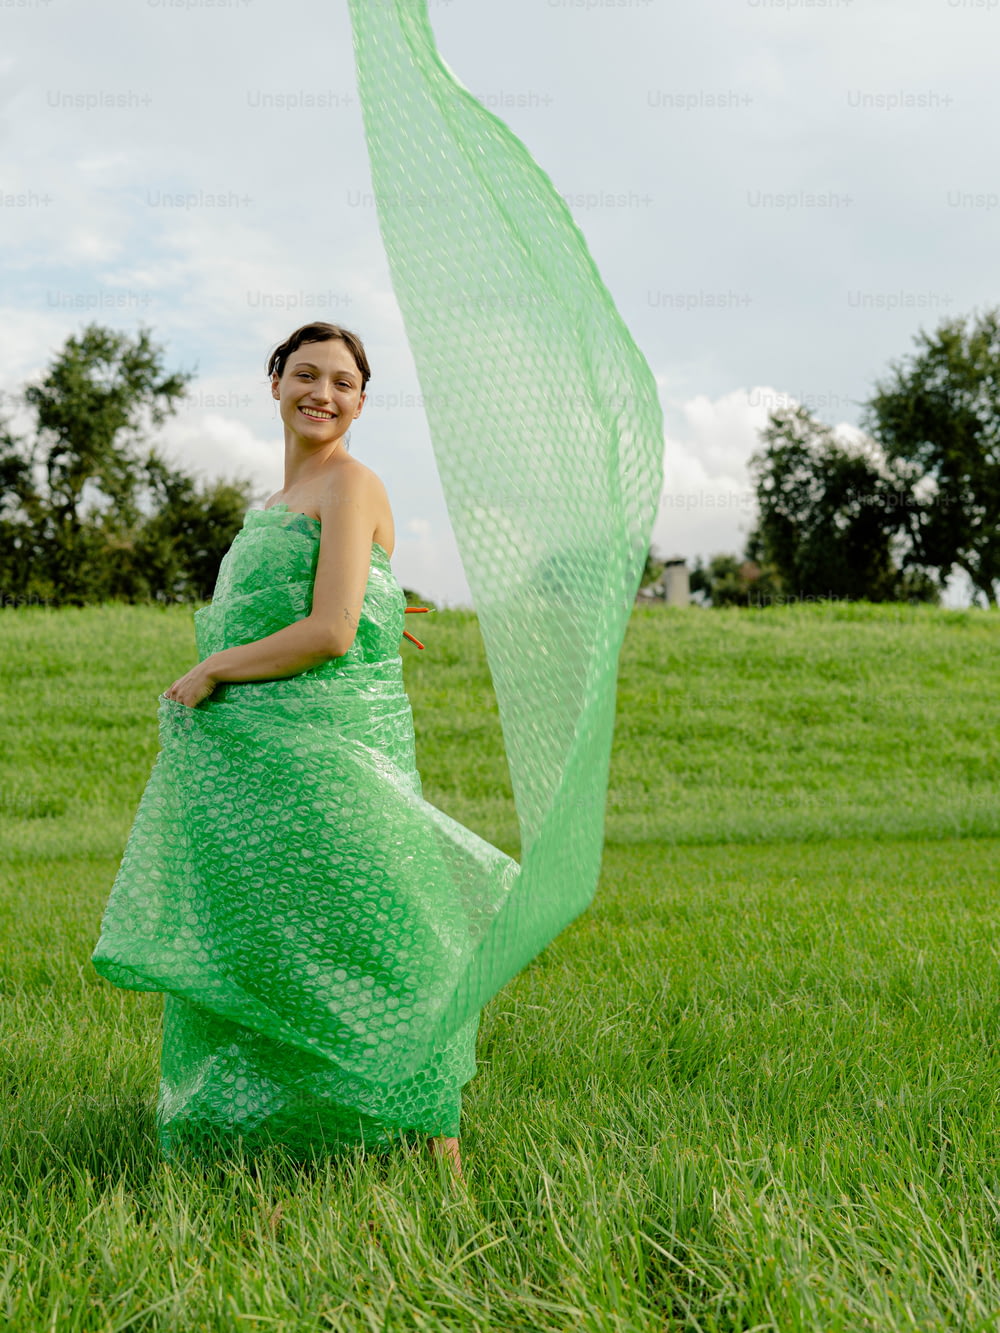 Eine Frau in einem grünen Kleid, die einen Regenschirm hält